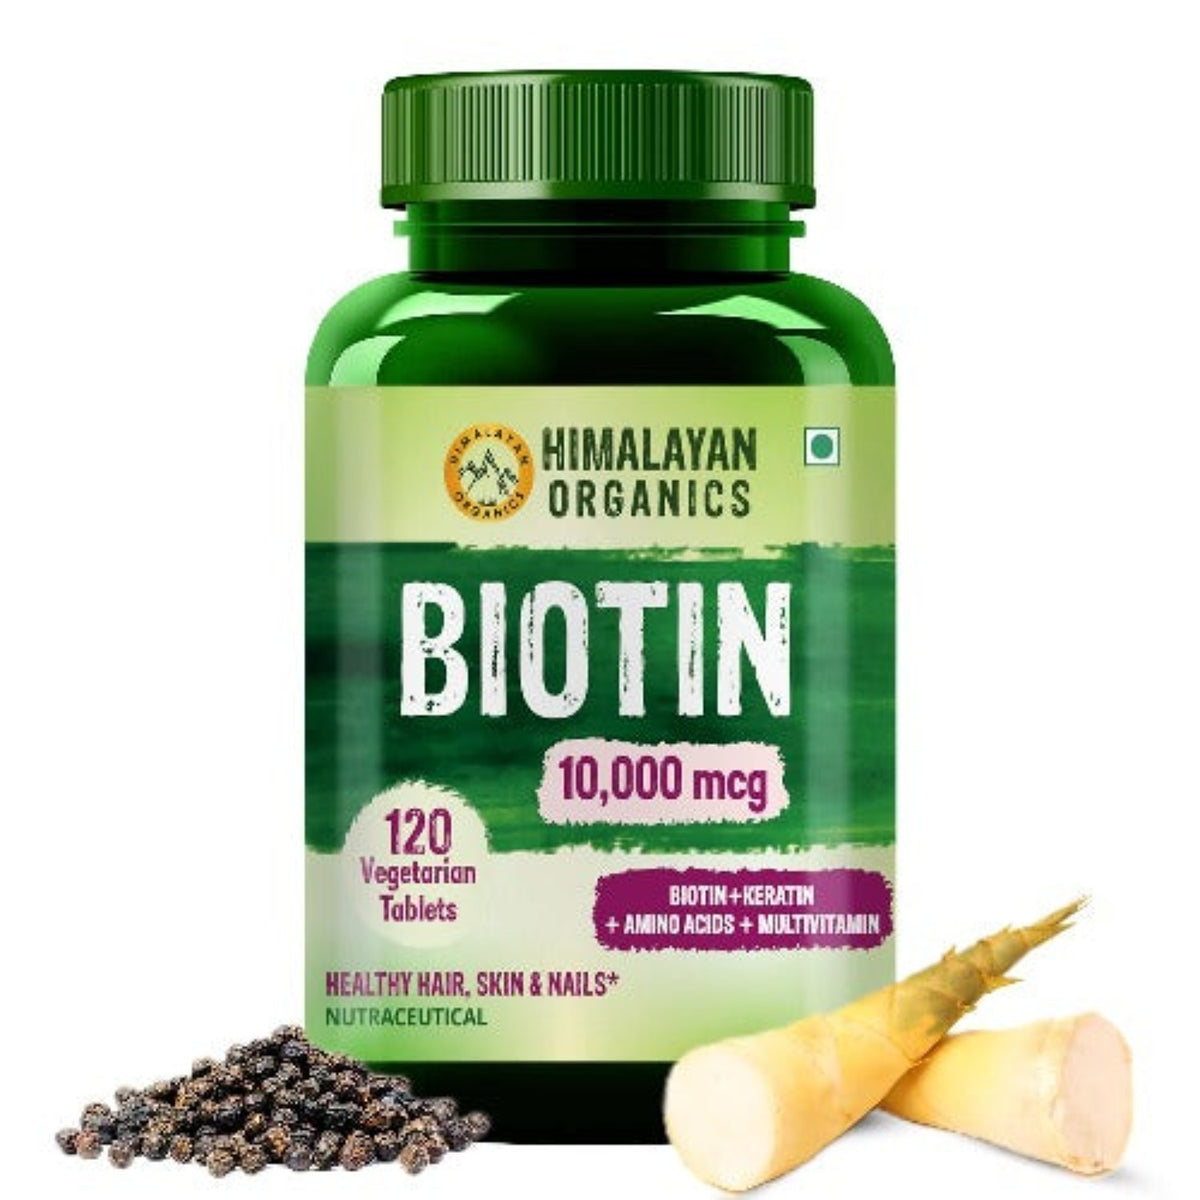 Himalayan Organics Биотин, 10 000 мкг, добавка с кератином, аминокислотами и мультивитаминами, 120 вегетарианских таблеток